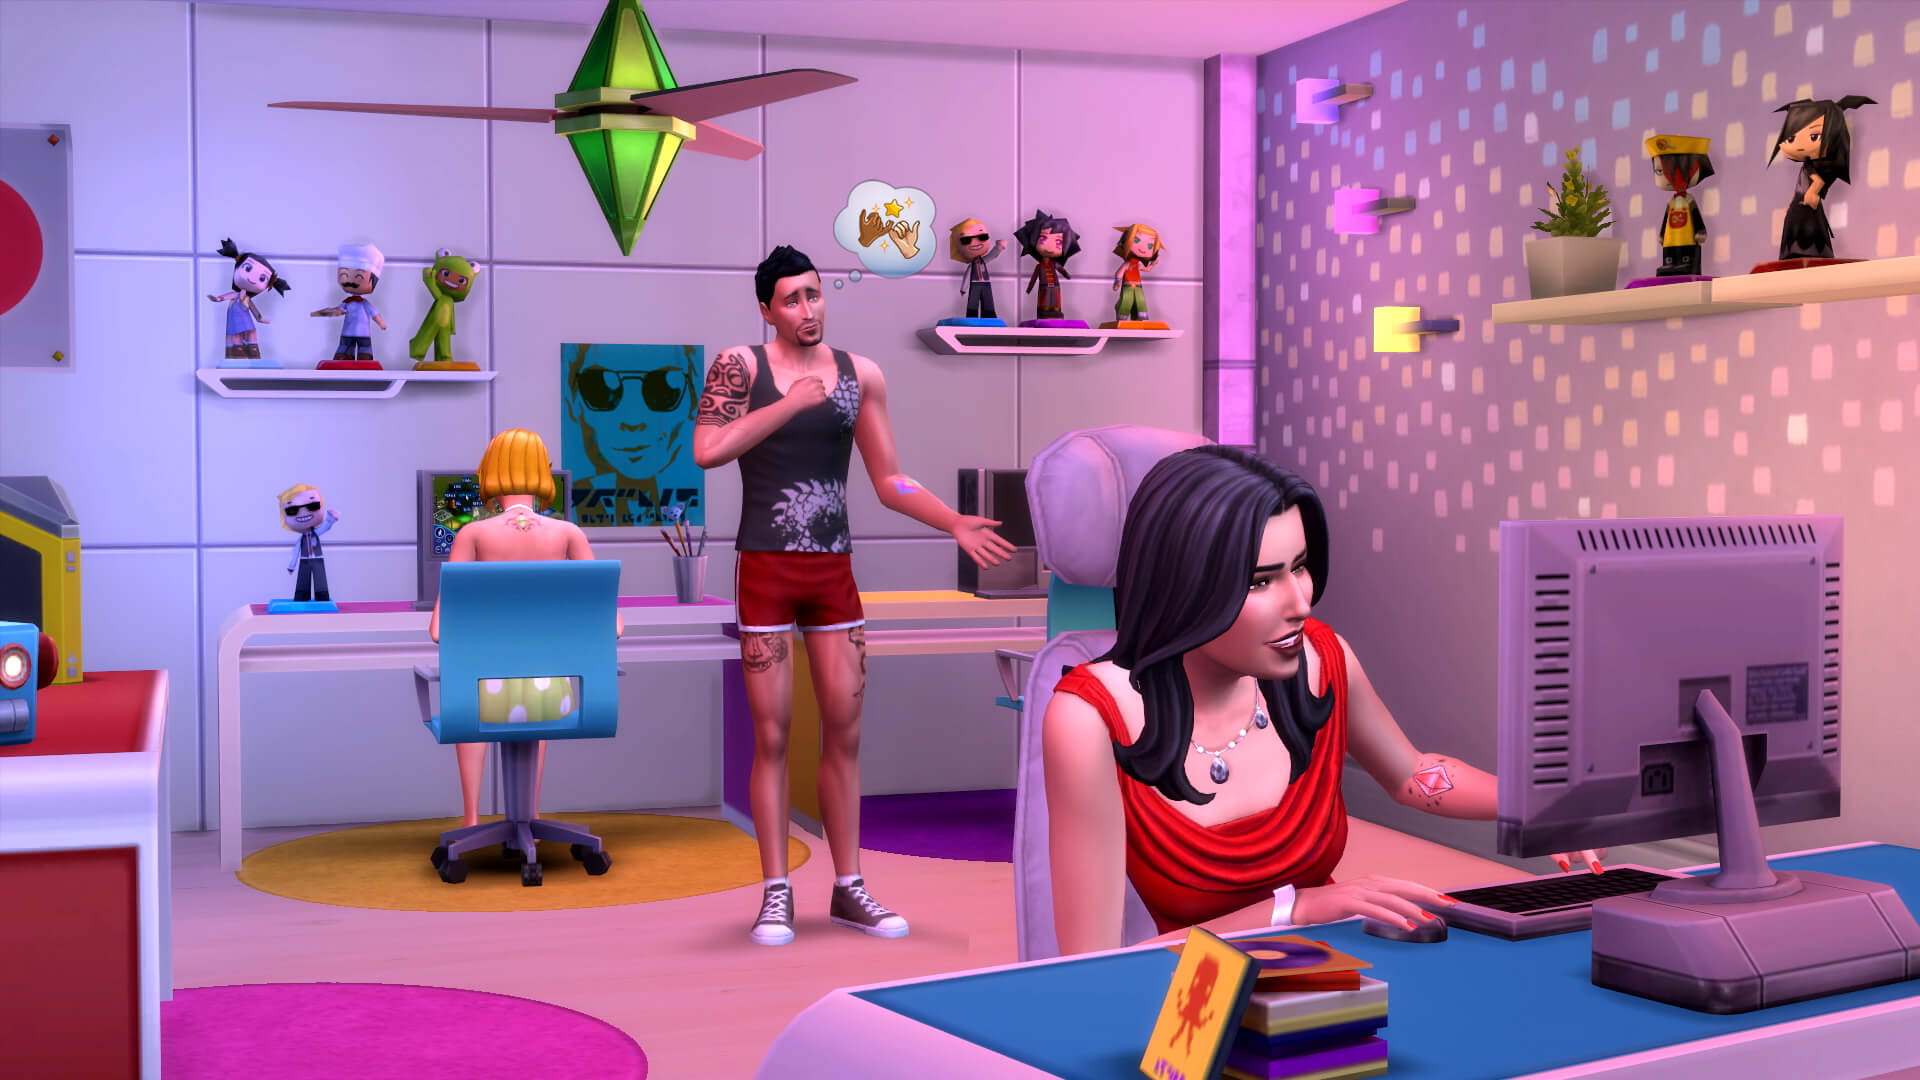 GTA, LoL, The Sims: relembre jogos mais populares nos anos 2000